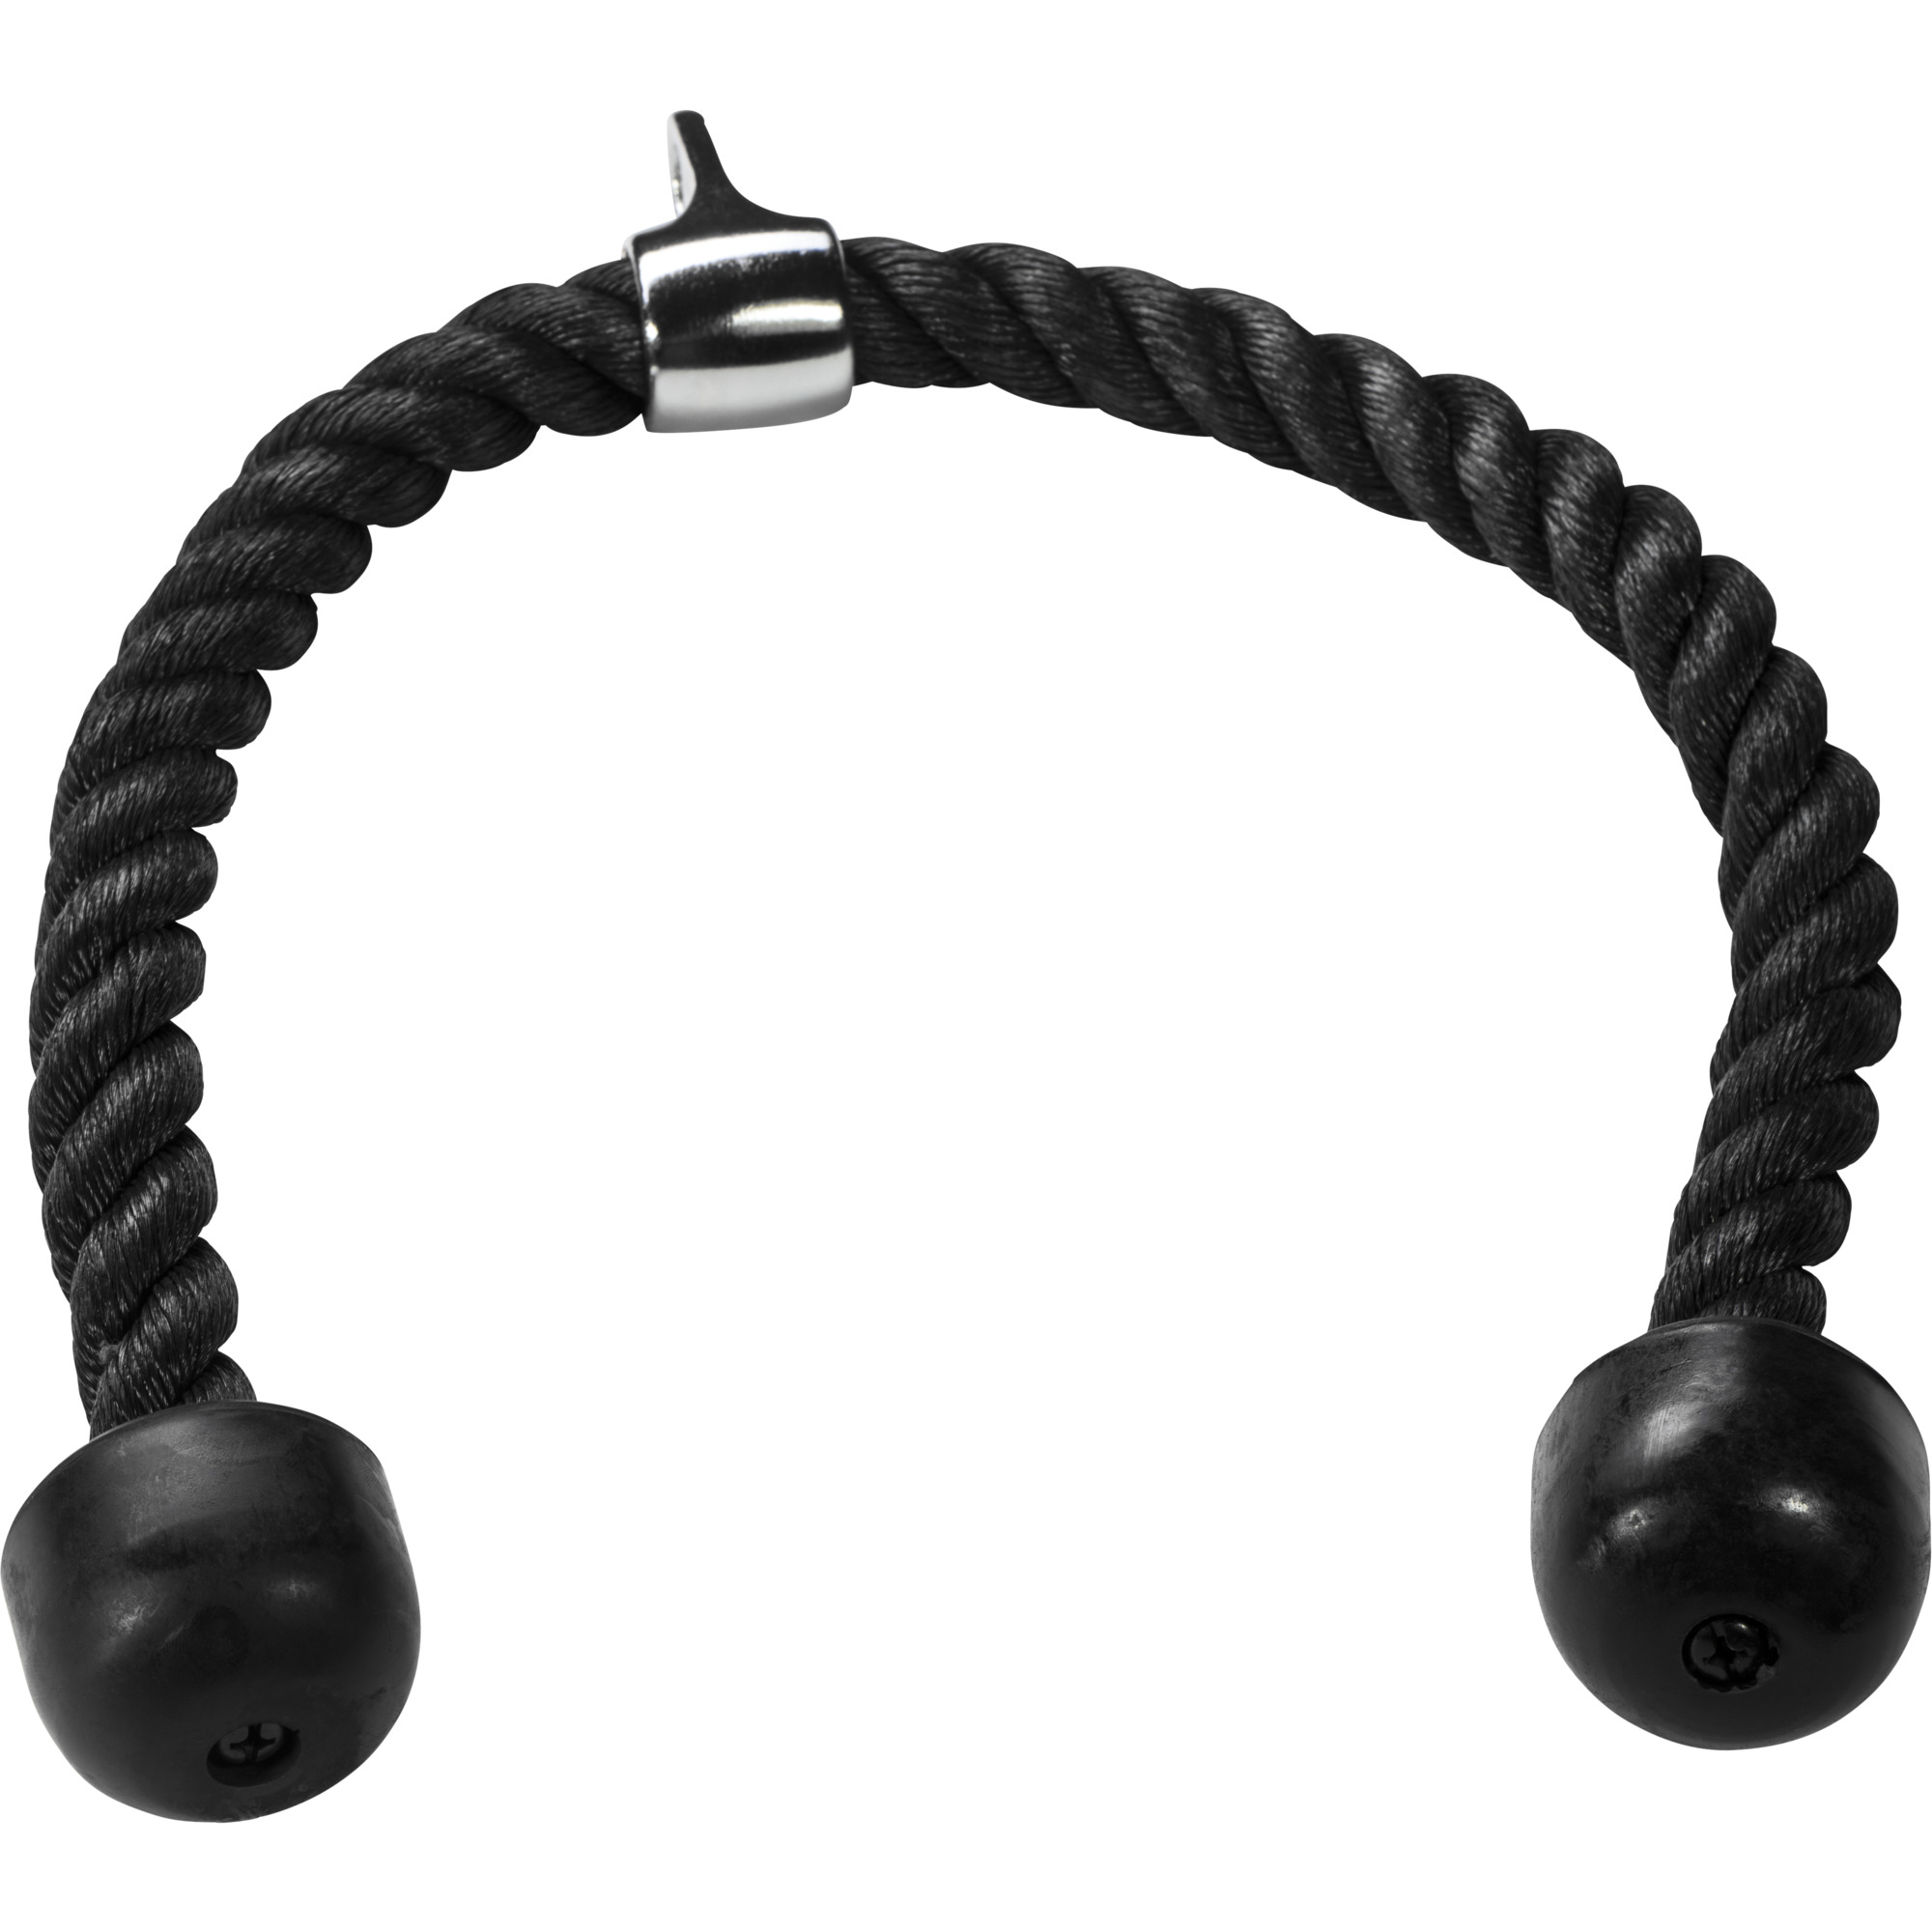 Corde de traction nylon, couleur noire, 85 cm